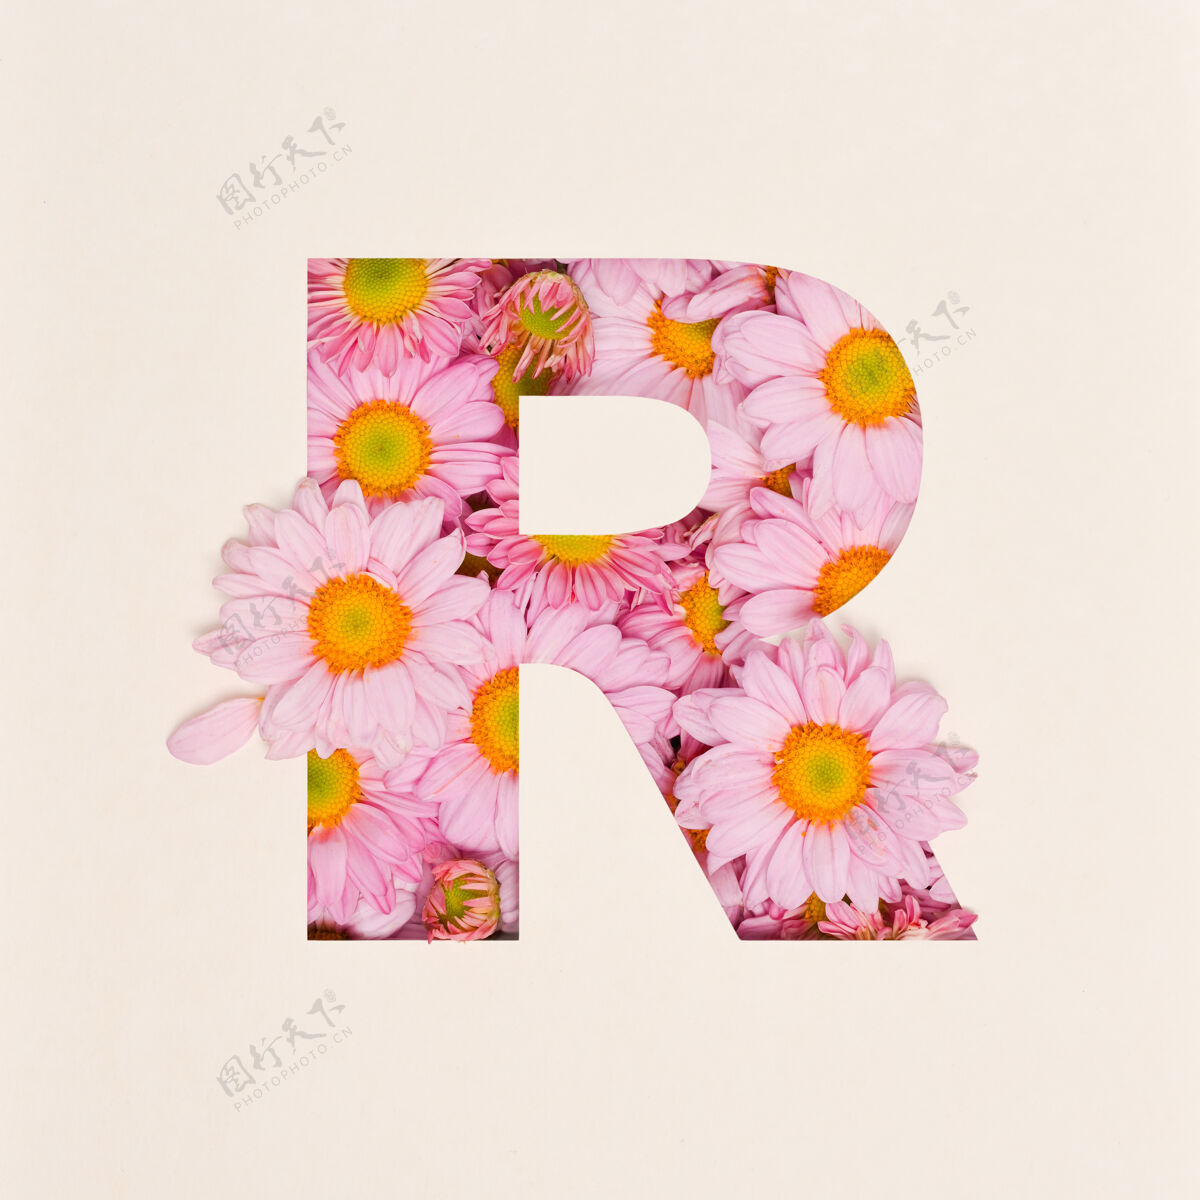 字符字体设计 抽象字母字体与粉红色的花 现实的花卉排版-r植物花瓣装饰